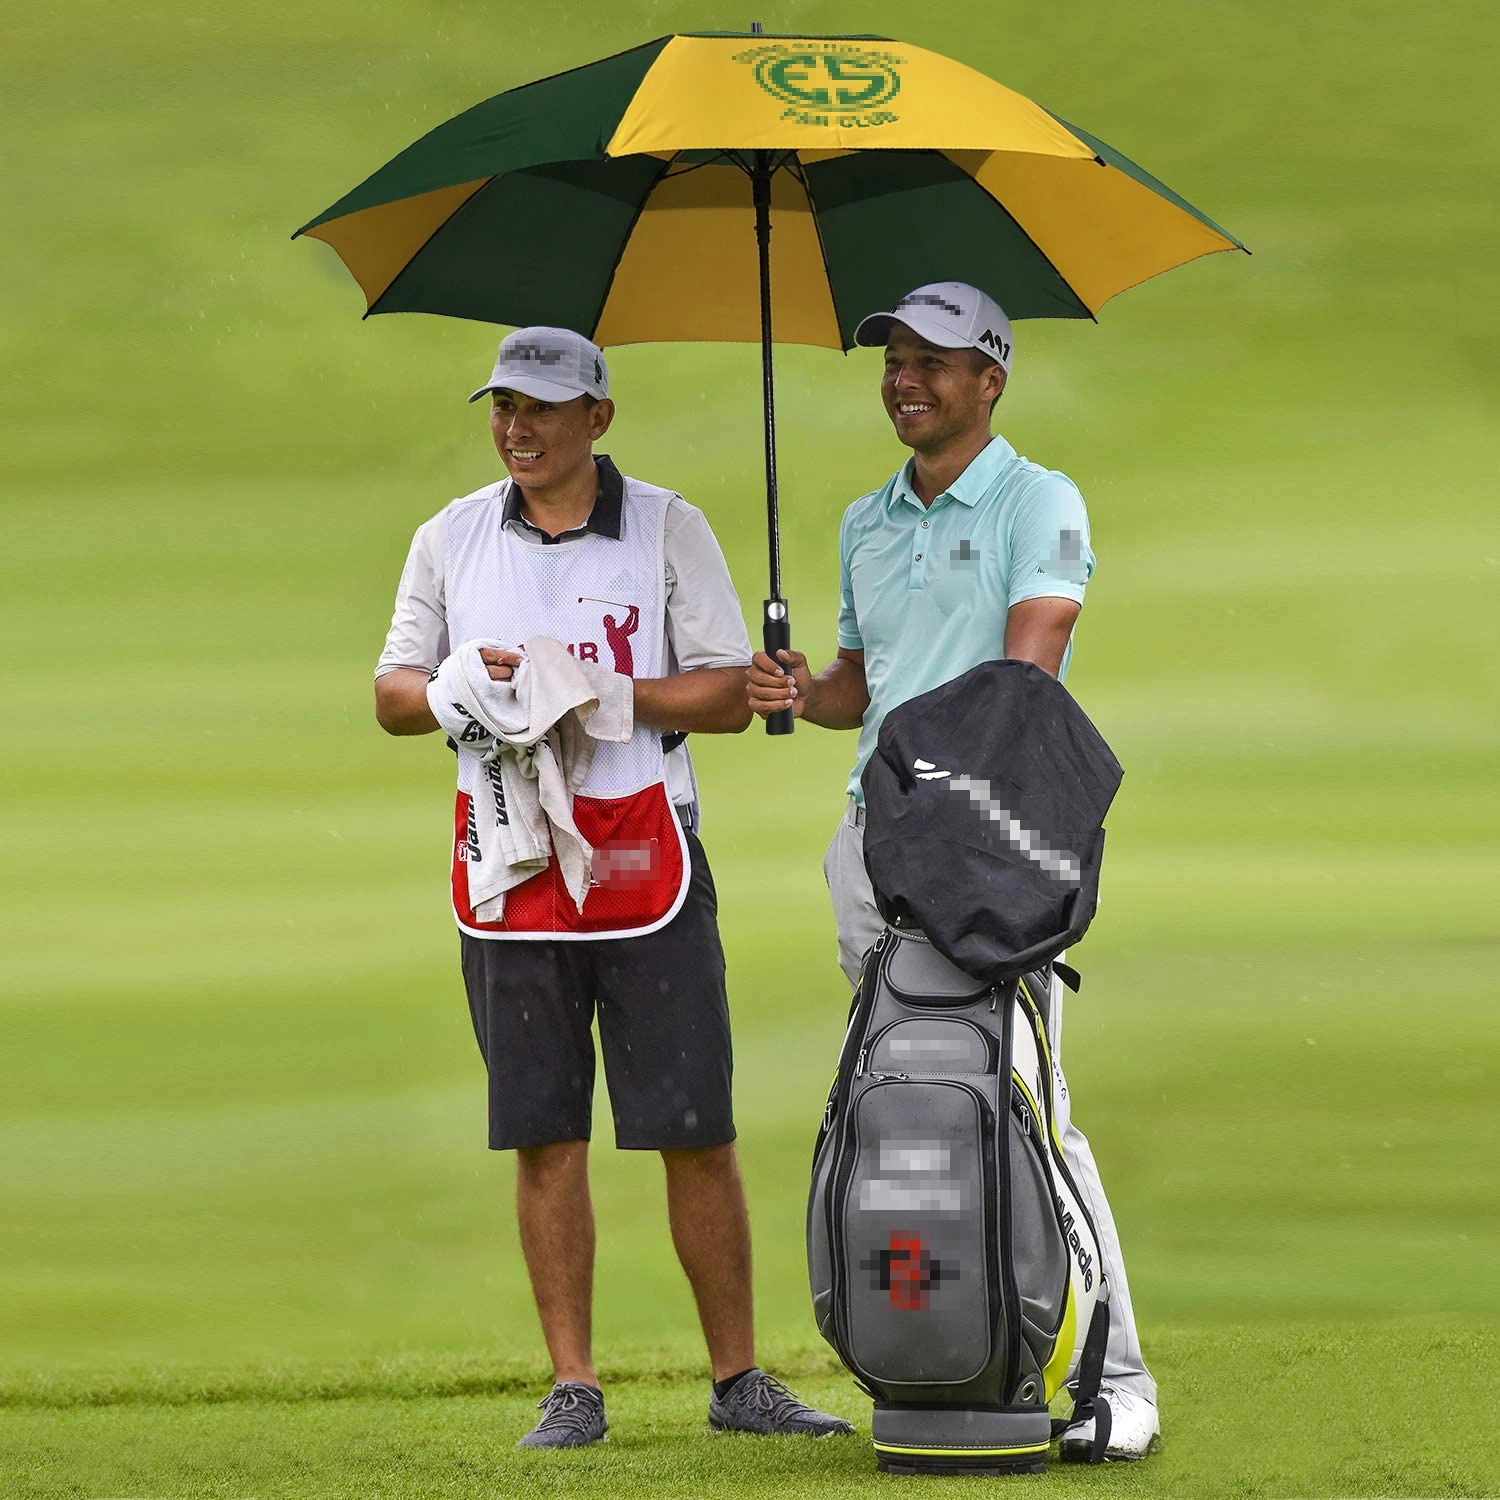 High/Calidad Premium de fibra de vidrio a prueba de intemperie Windproof lujo ventilado Golf paraguas para los hombres/adulto con el logotipo personalizado